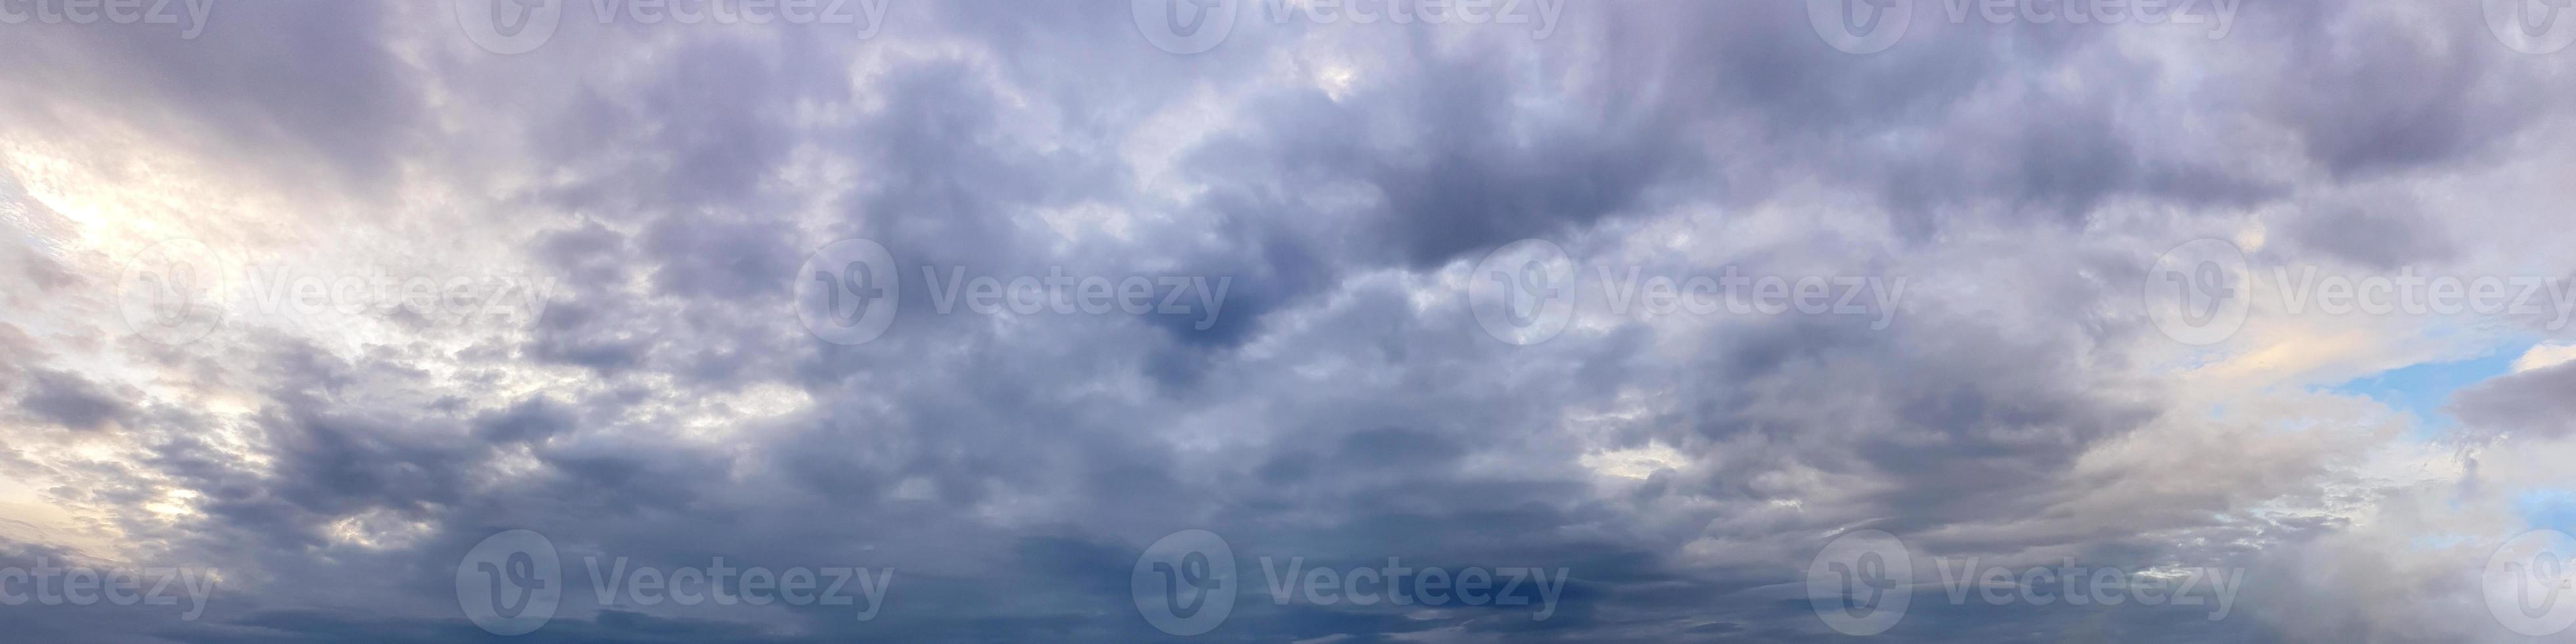 Panorama espectacular del cielo con nubes de tormenta en un día nublado foto